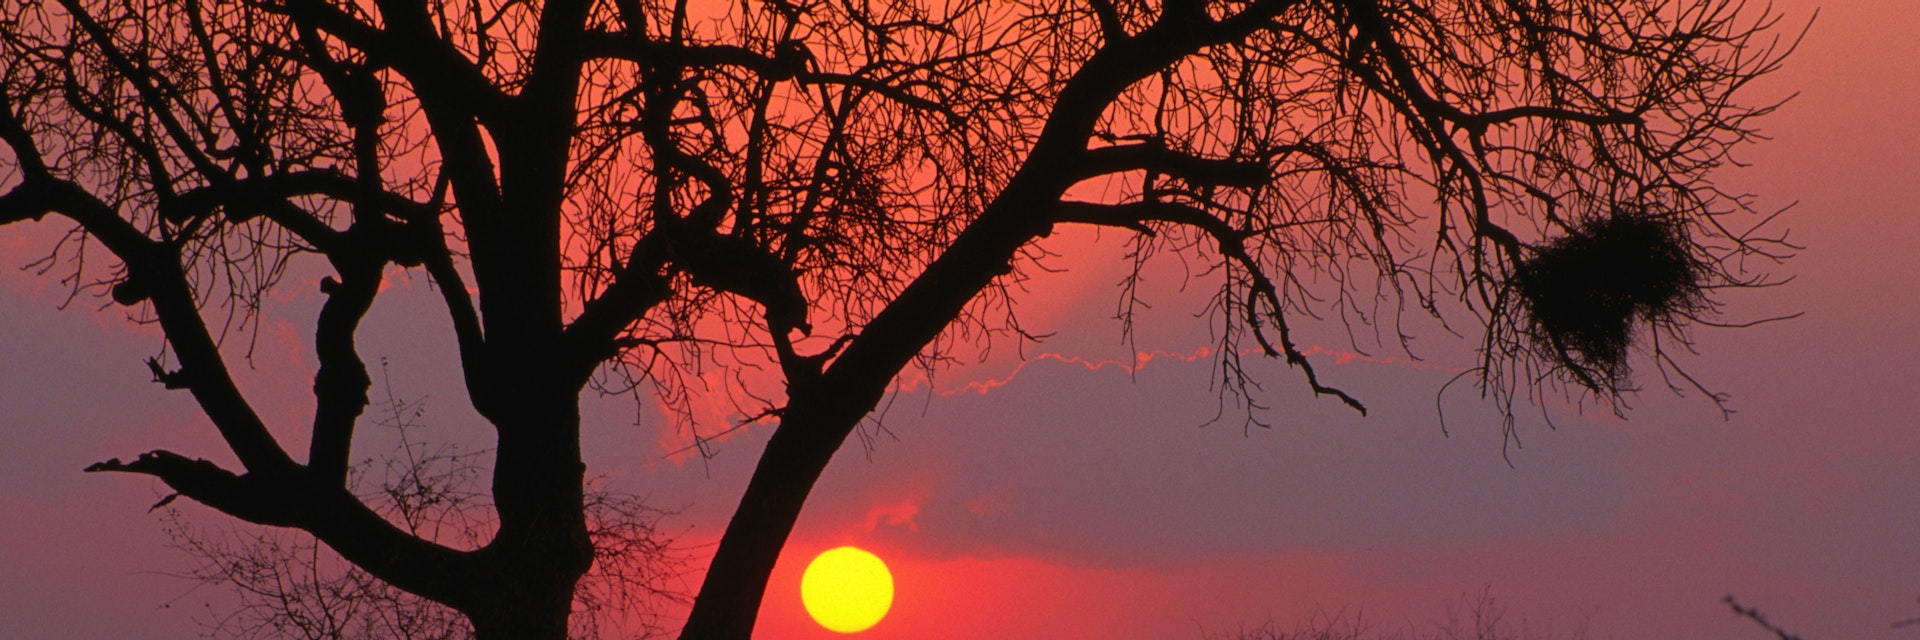 African sunset, Kruger National Park.